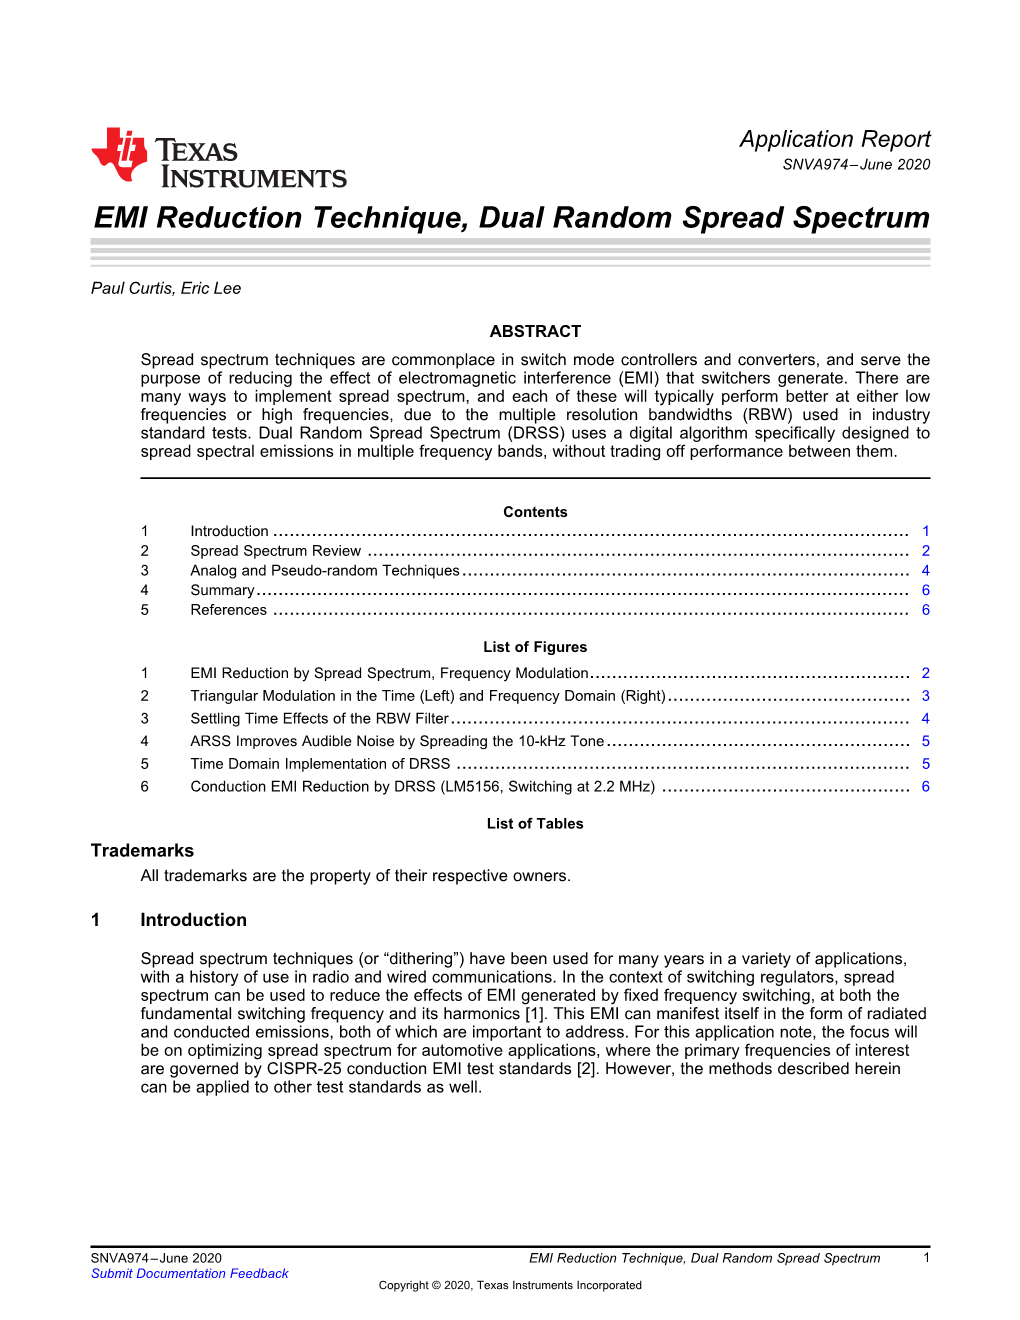 EMI Reduction Technique, Dual Random Spread Spectrum